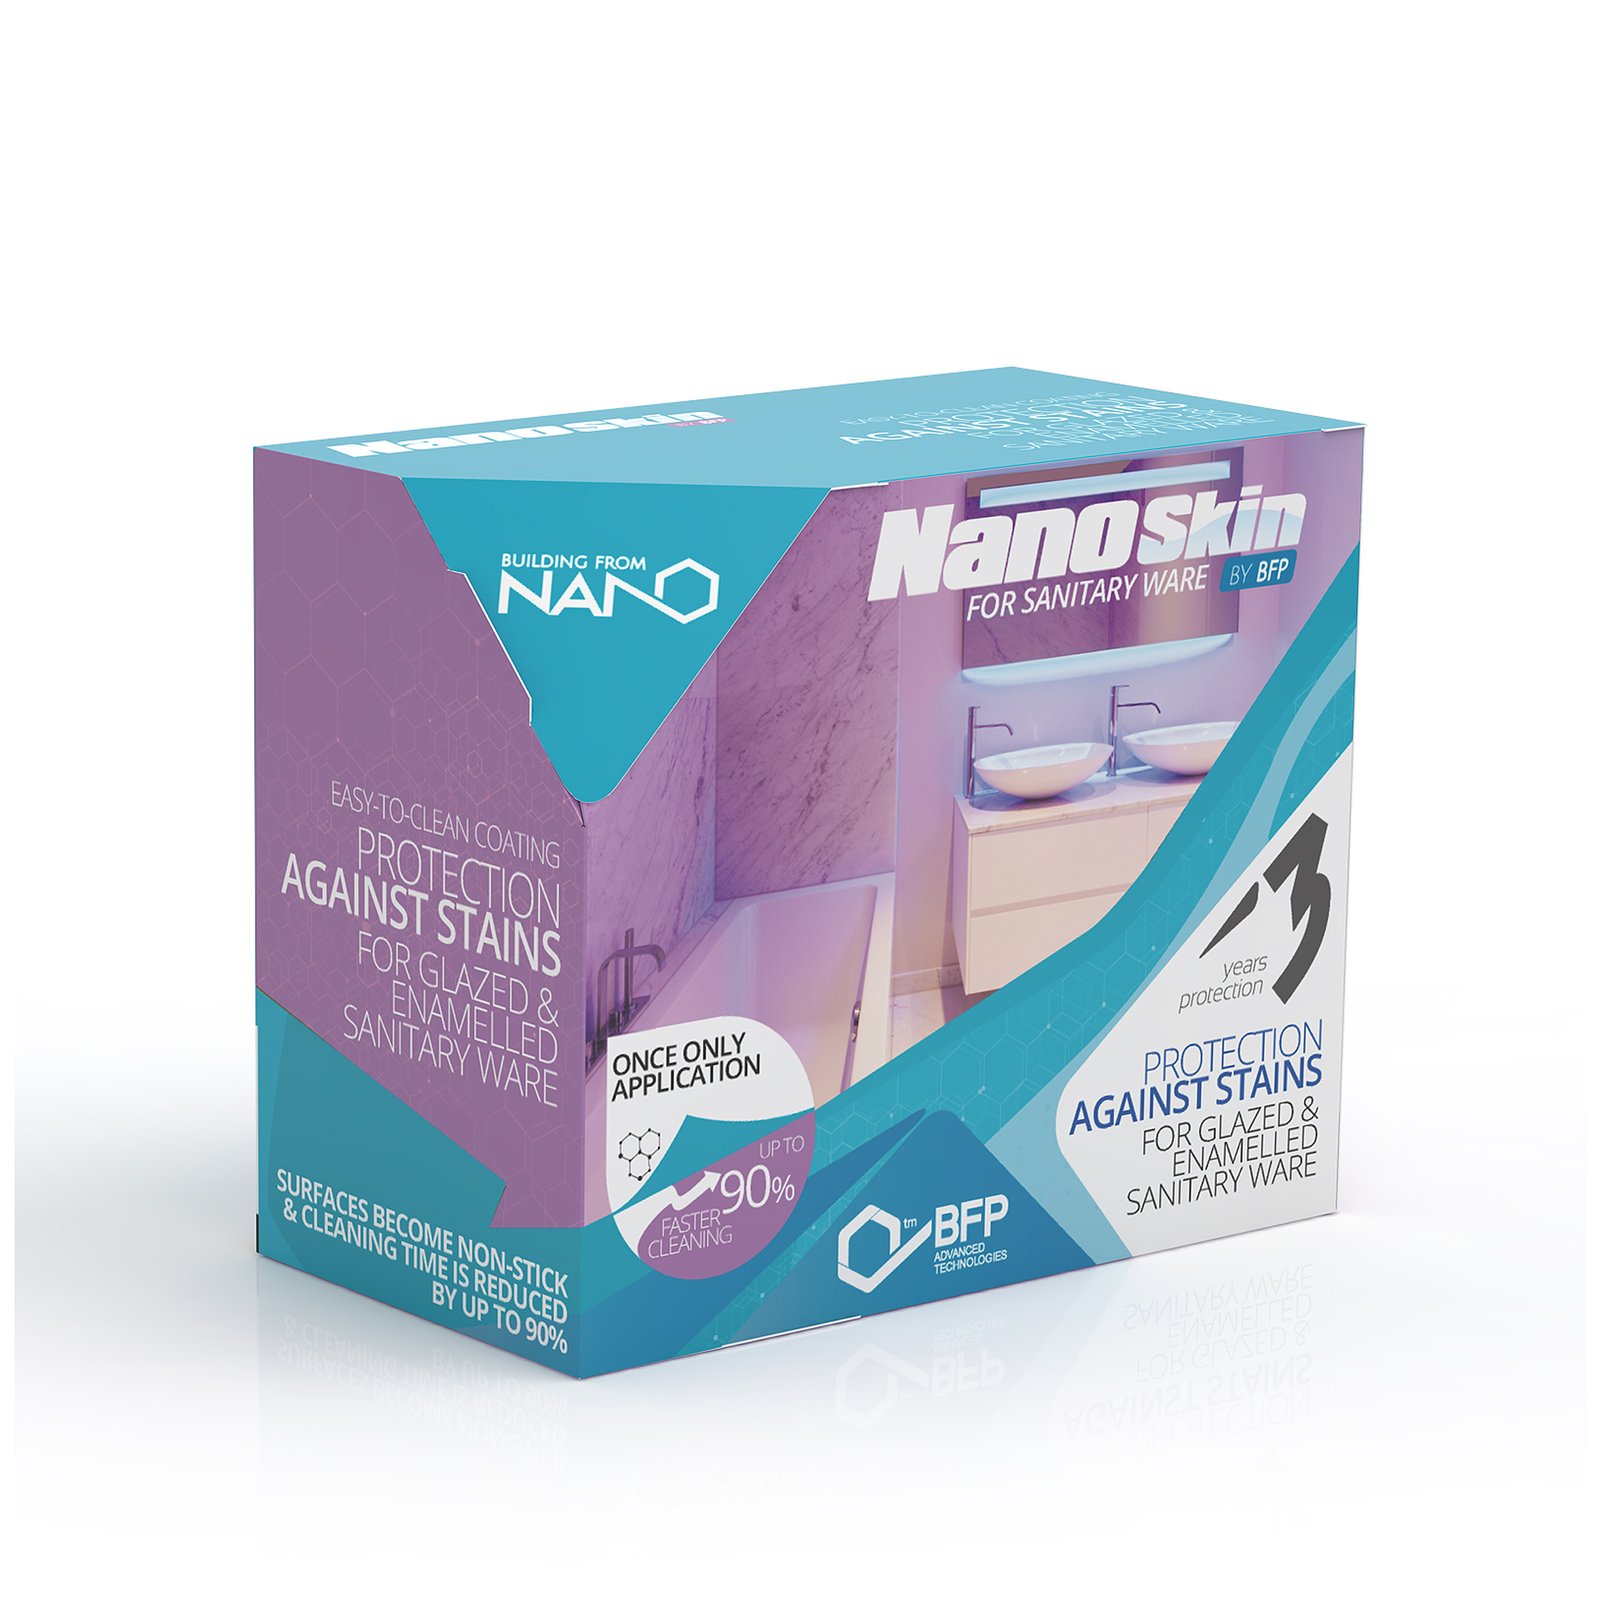 NanoSkin for sanitary ware